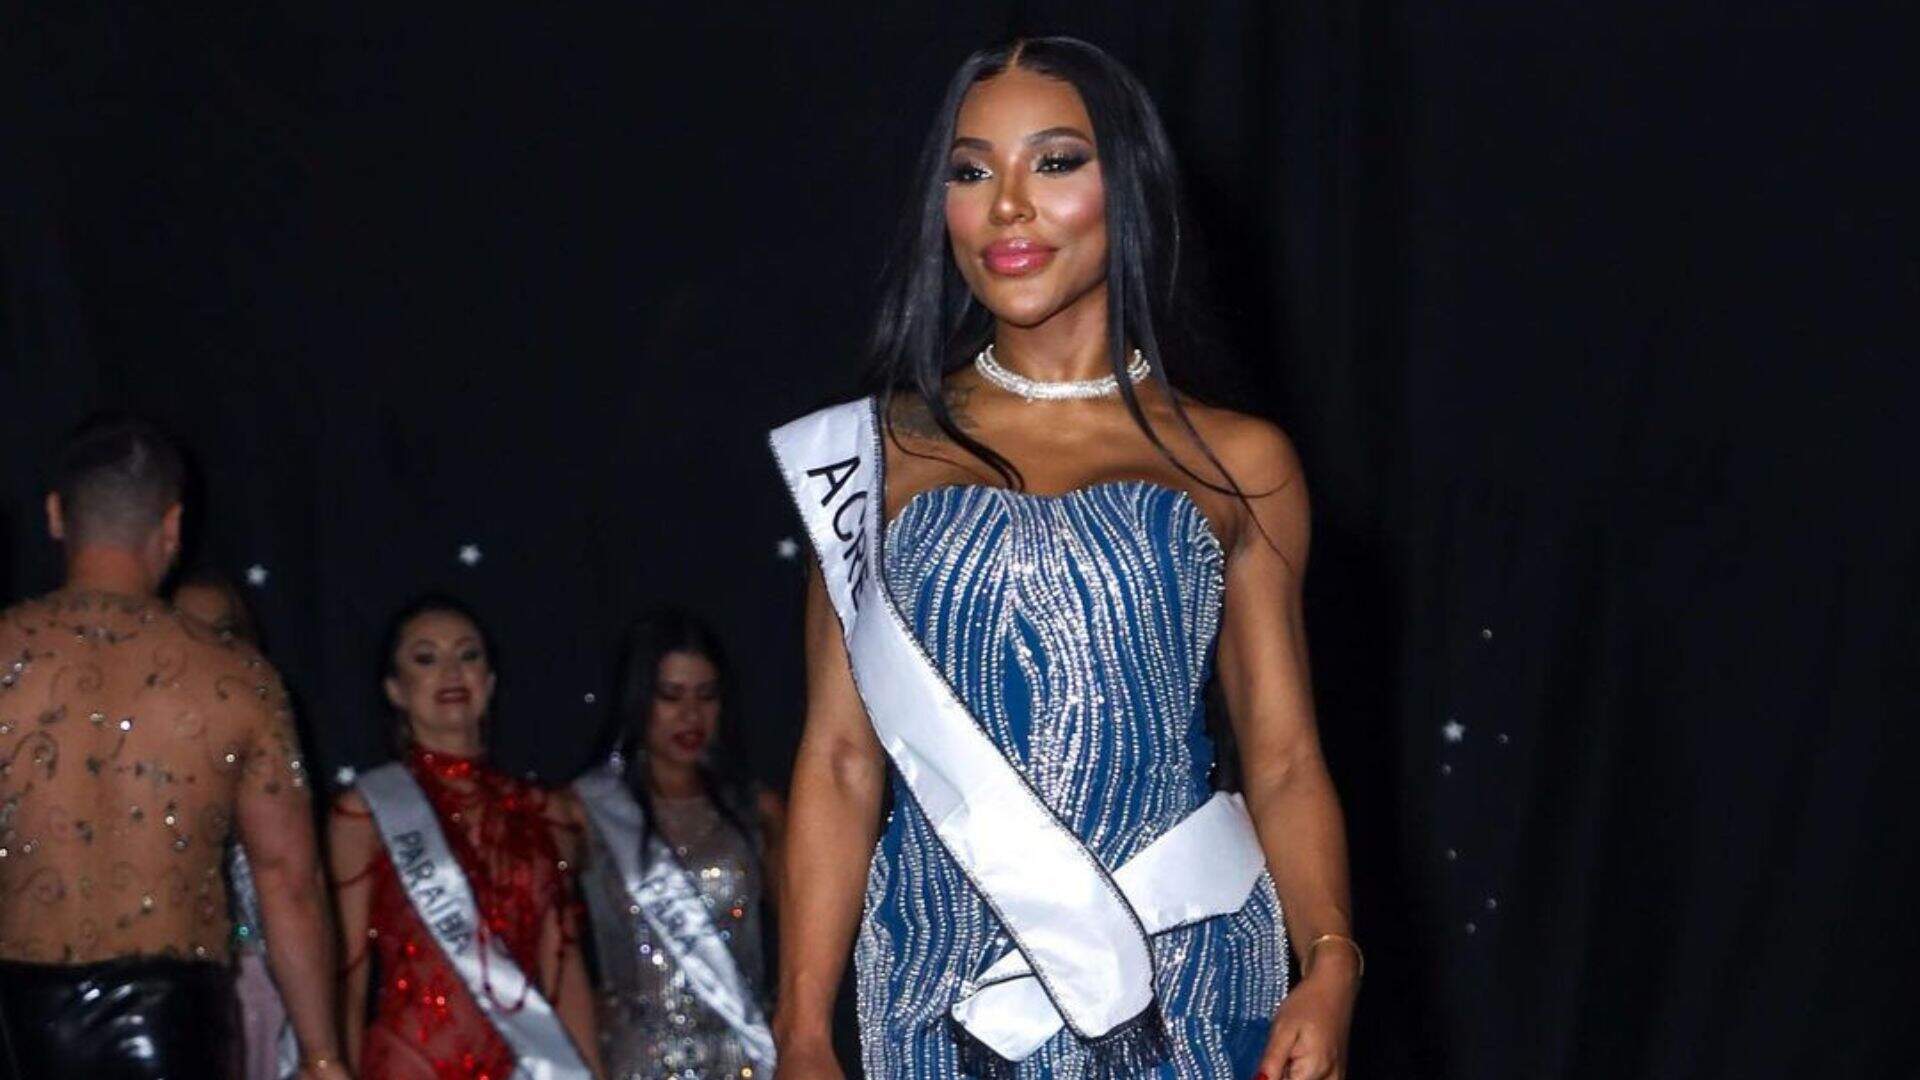 Candidata ao Miss Bumbum que faz “dieta do sexo”, vence o concurso